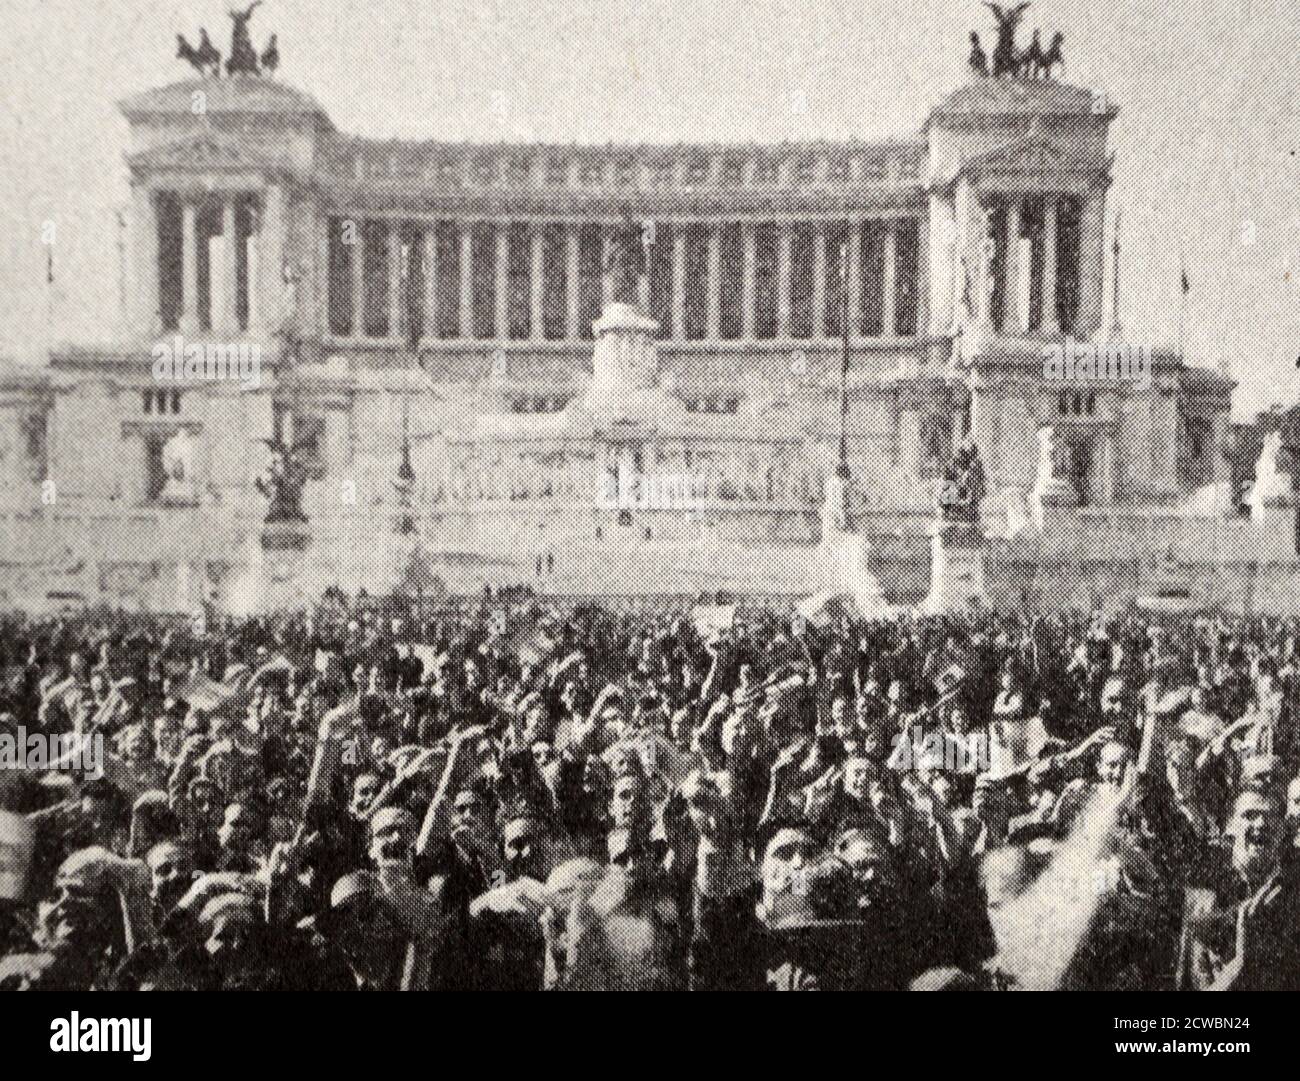 Schwarz-Weiß-Fotografie des Zweiten Weltkriegs (1939-1945) zeigt eine große Menschenmenge auf der Piazza von Venedig, die den Sieg der Alliierten verkündete, an der gleichen Stelle, wo Mussolini so oft von frenetischen Ovationen und Beifall desselben römischen Volkes ausgesetzt war. Stockfoto